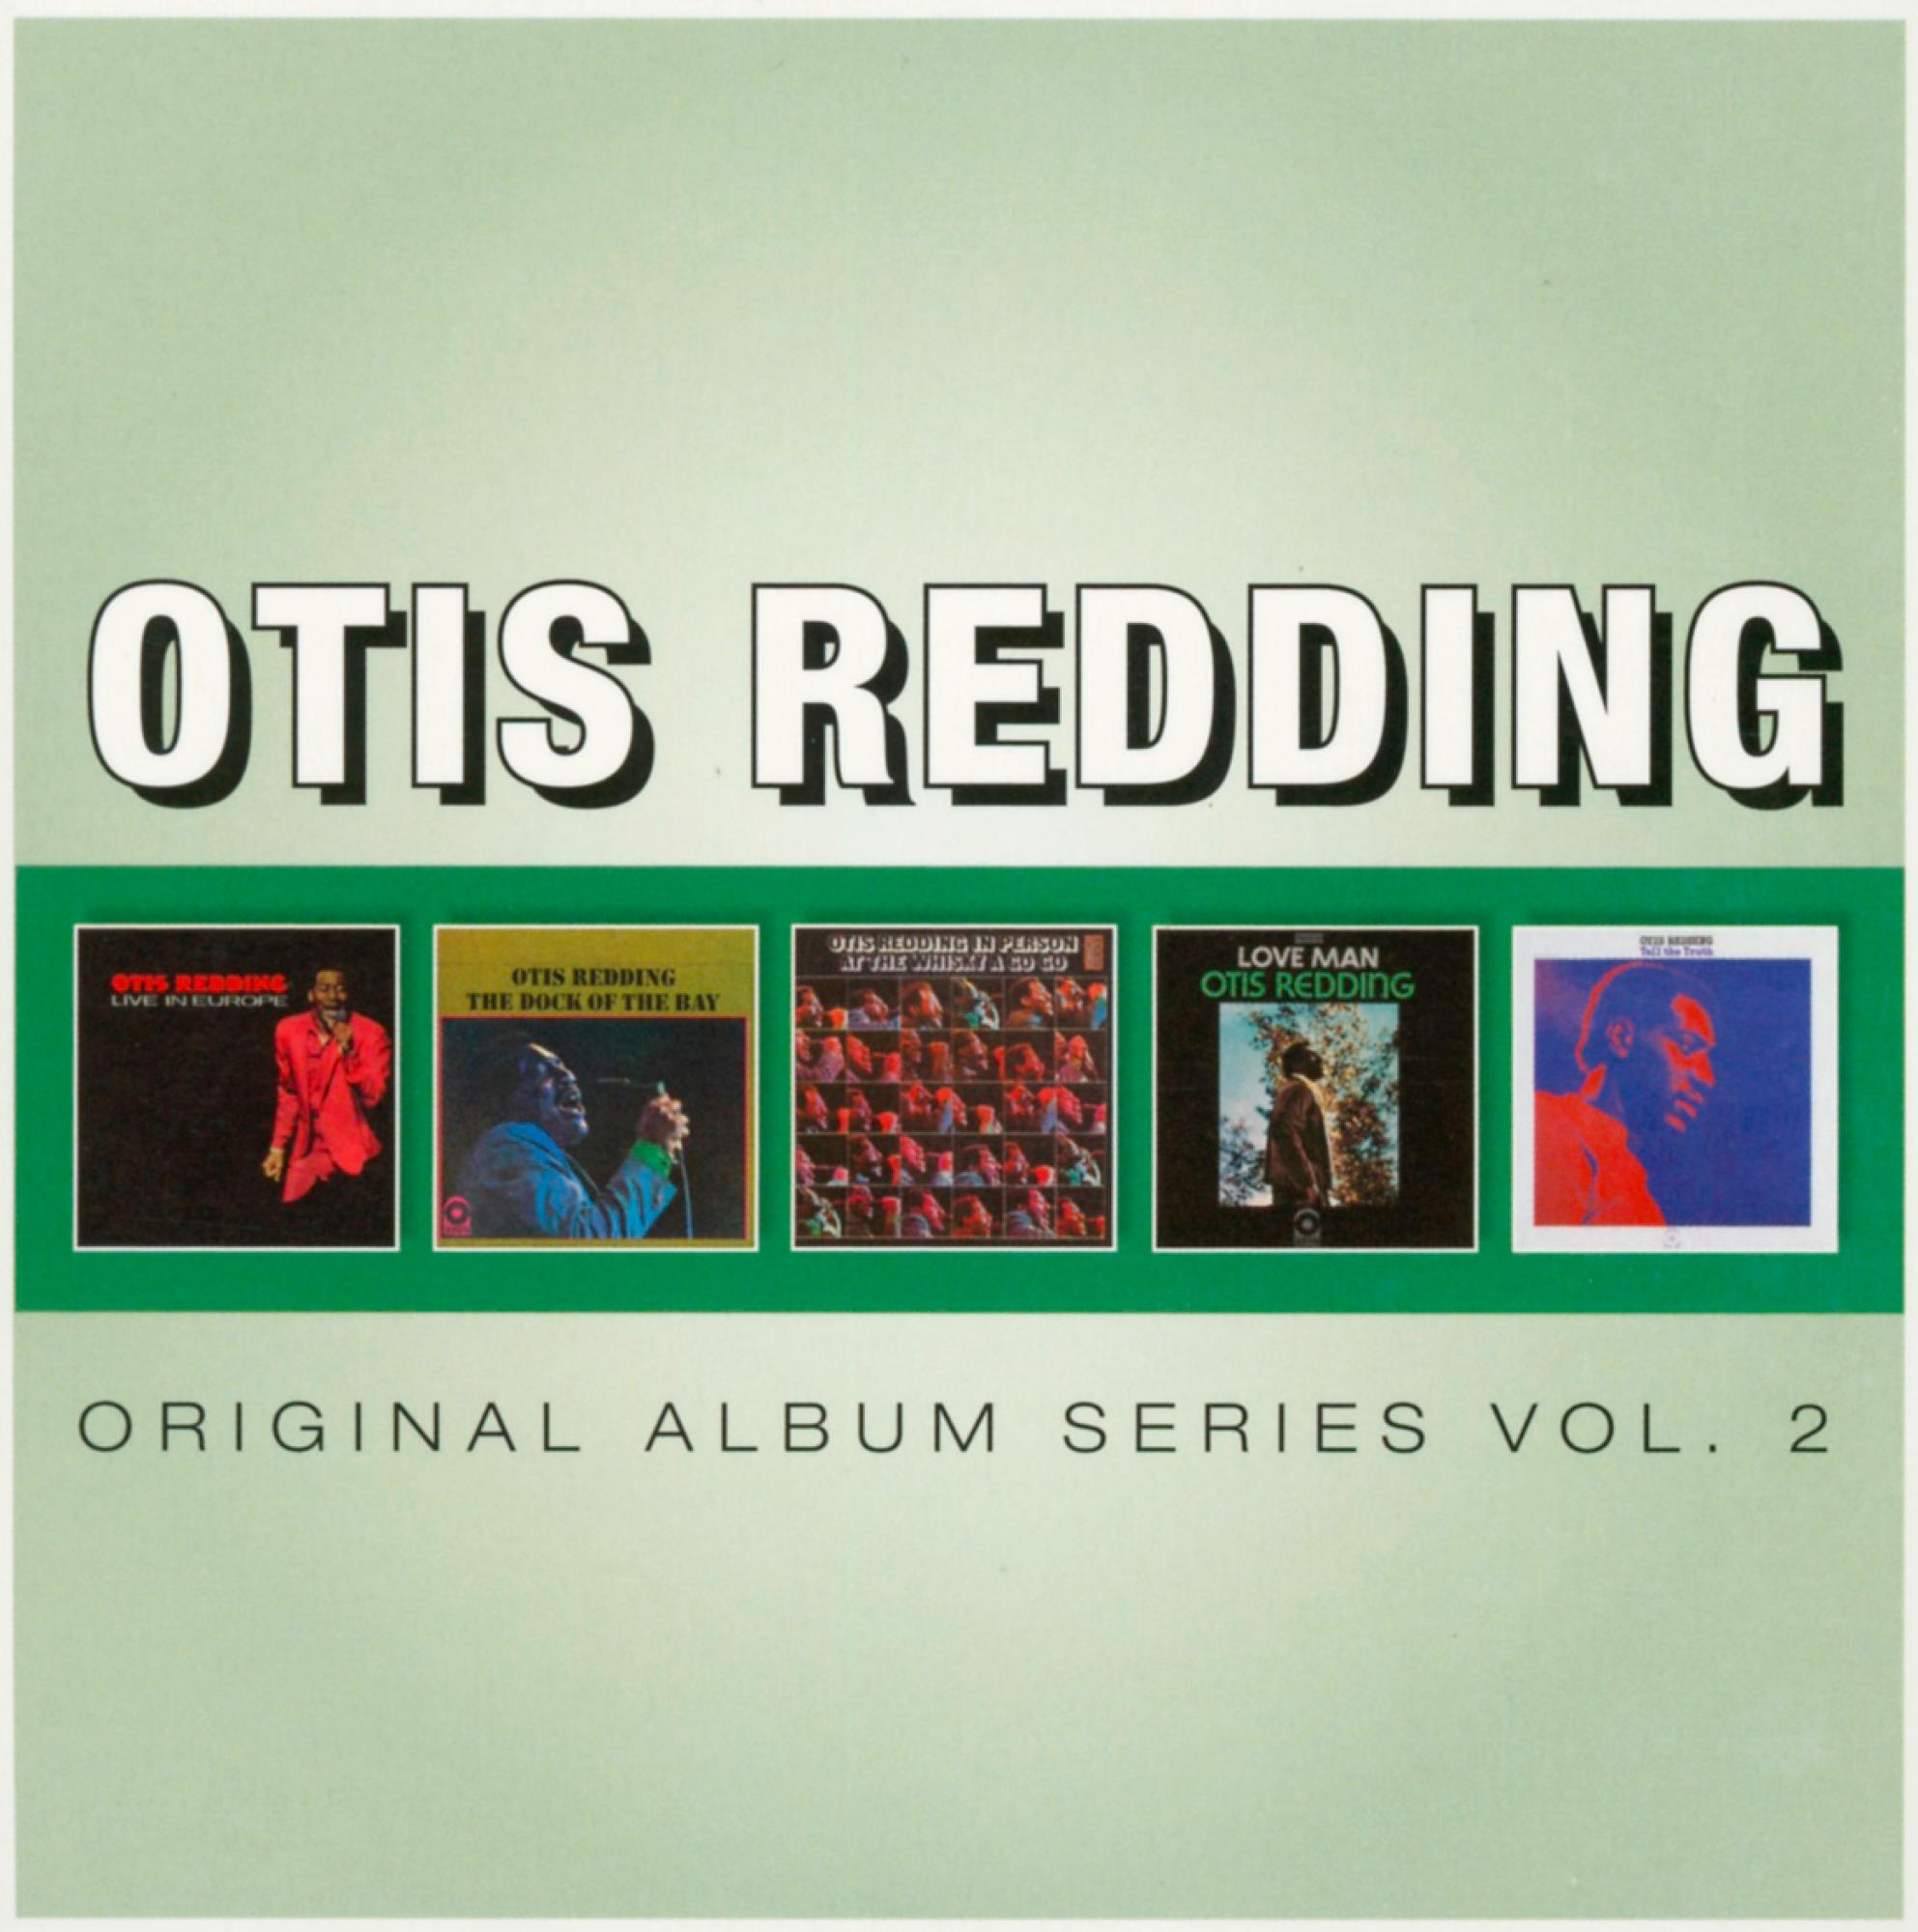 - Original Series - (CD) Vol. 2 Redding Otis Album